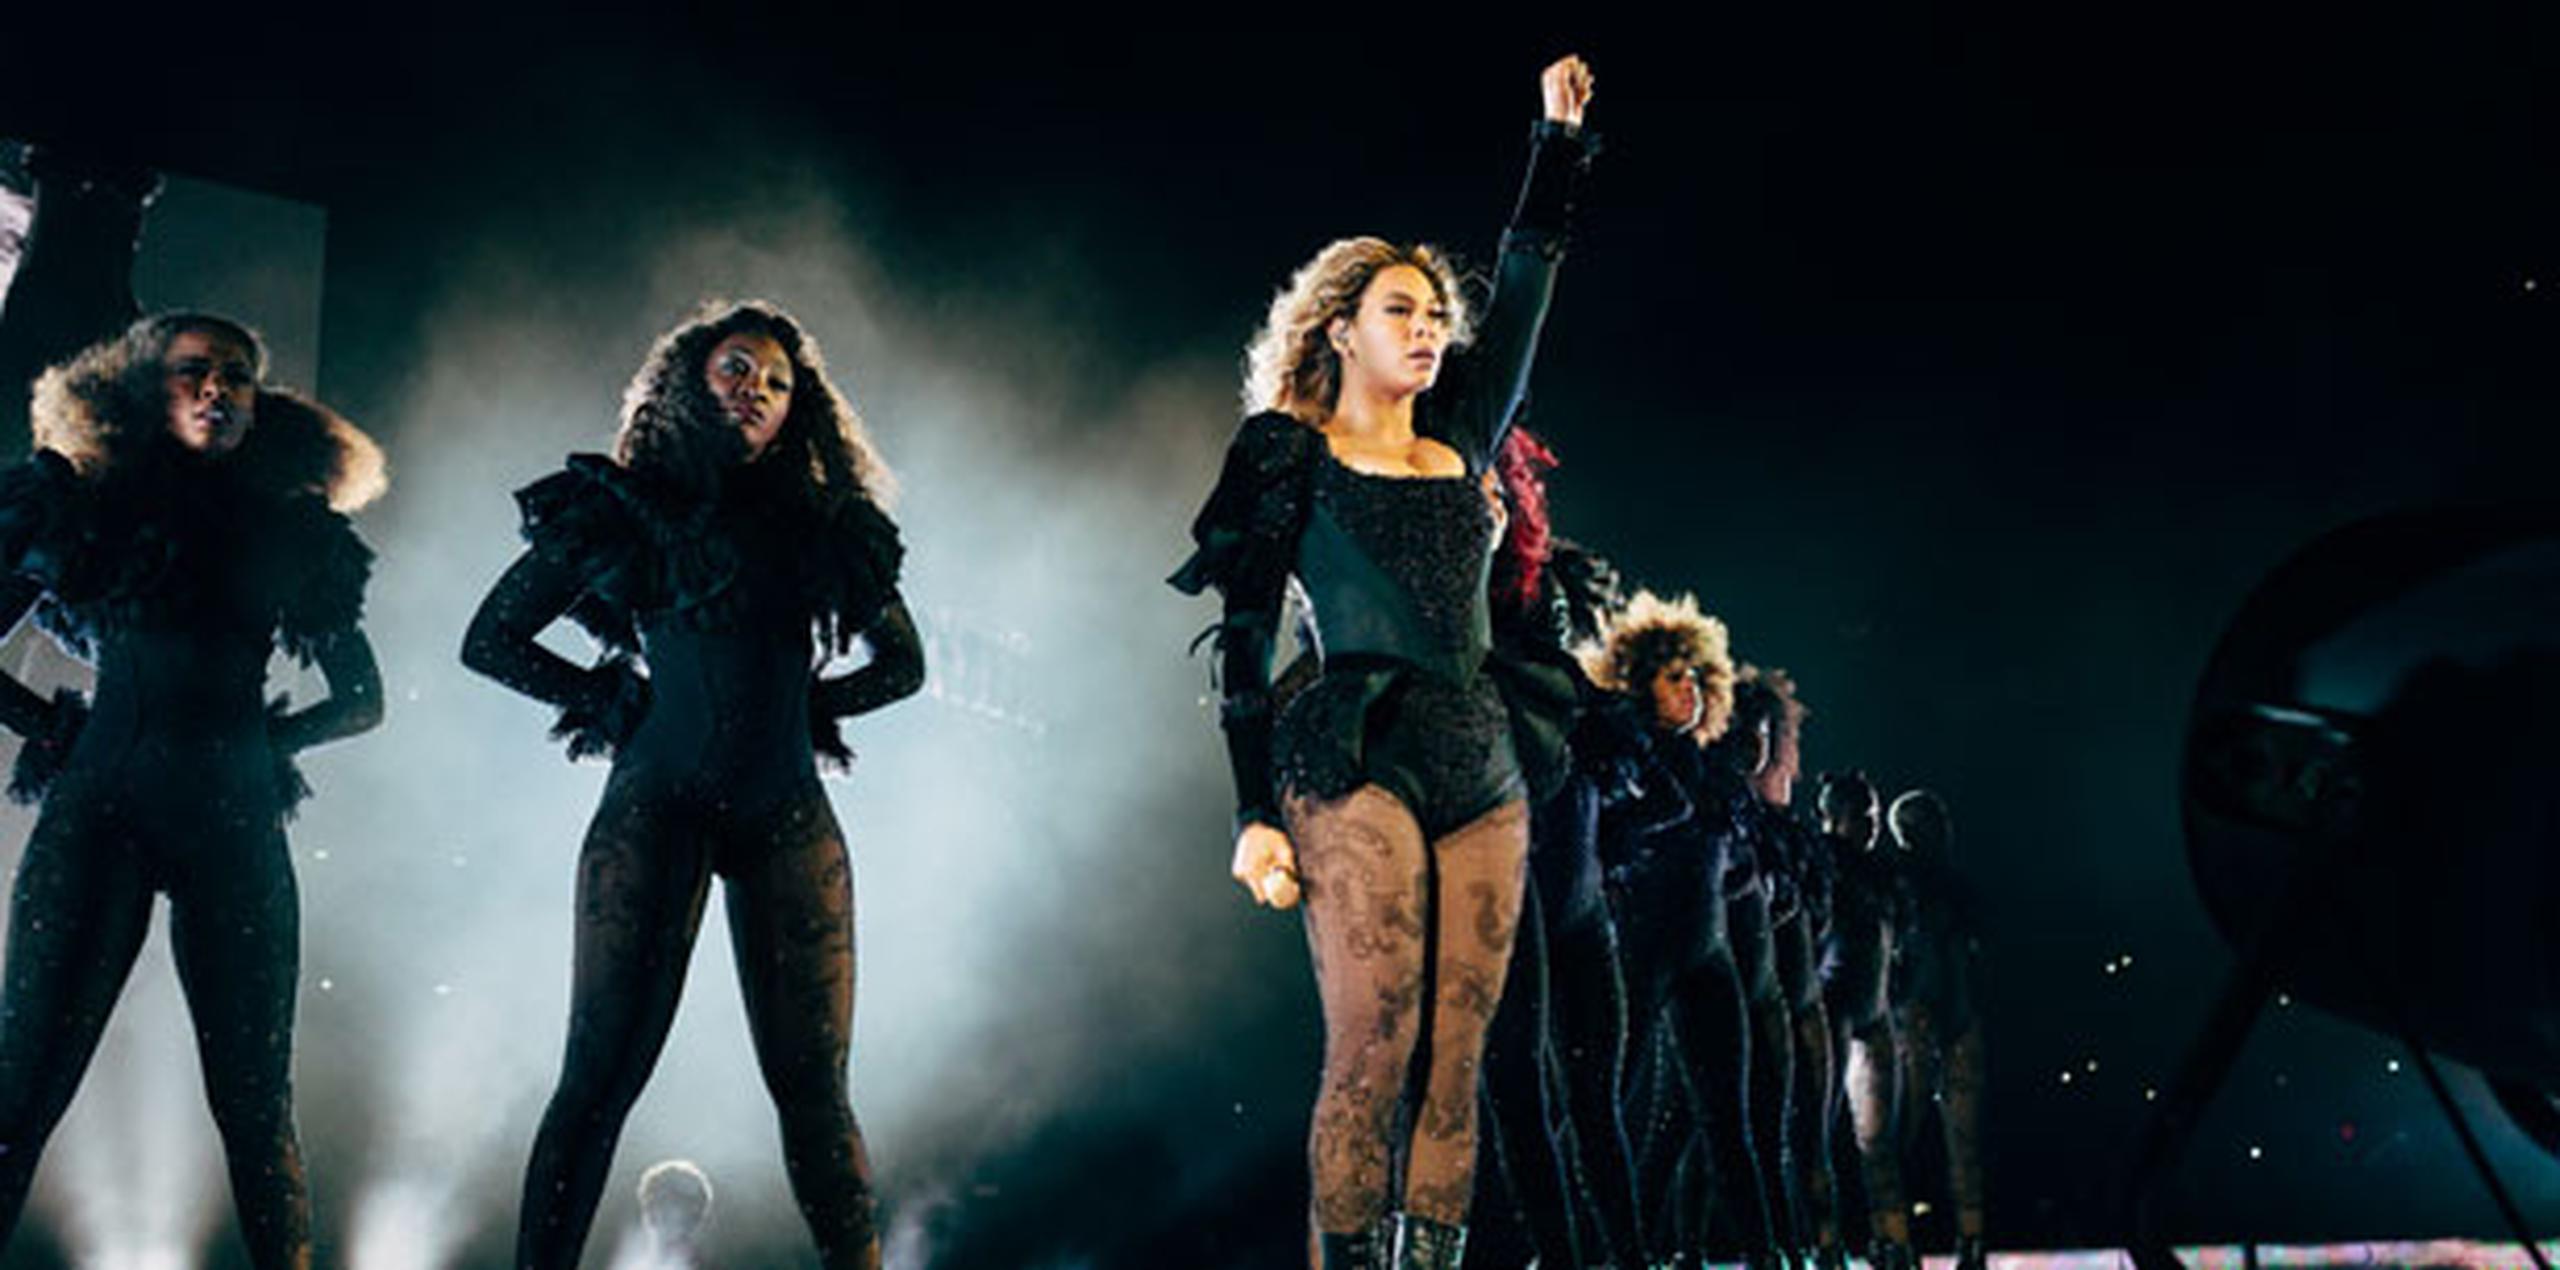 Beyoncé recuperó los temas clave de su discografía para celebrar el empoderamiento y la libertad de la mujer para expresar y sentir su sexualidad como quiera. (Archivo)